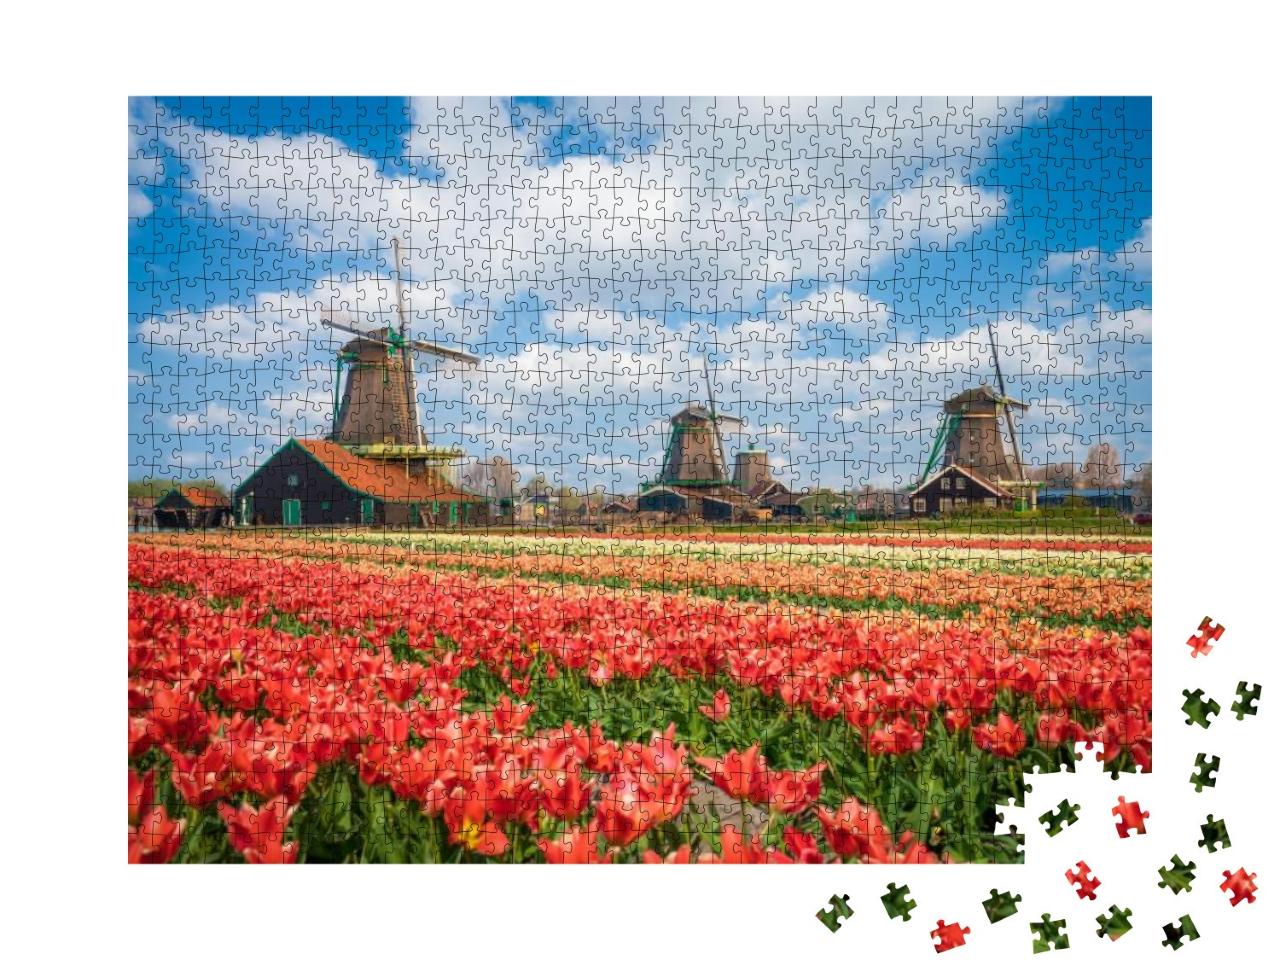 Puzzle 1000 Teile „Wunderschöne Landschaft mit Tulpen und Windmühlen in Zaanse Schans, Niederlande“